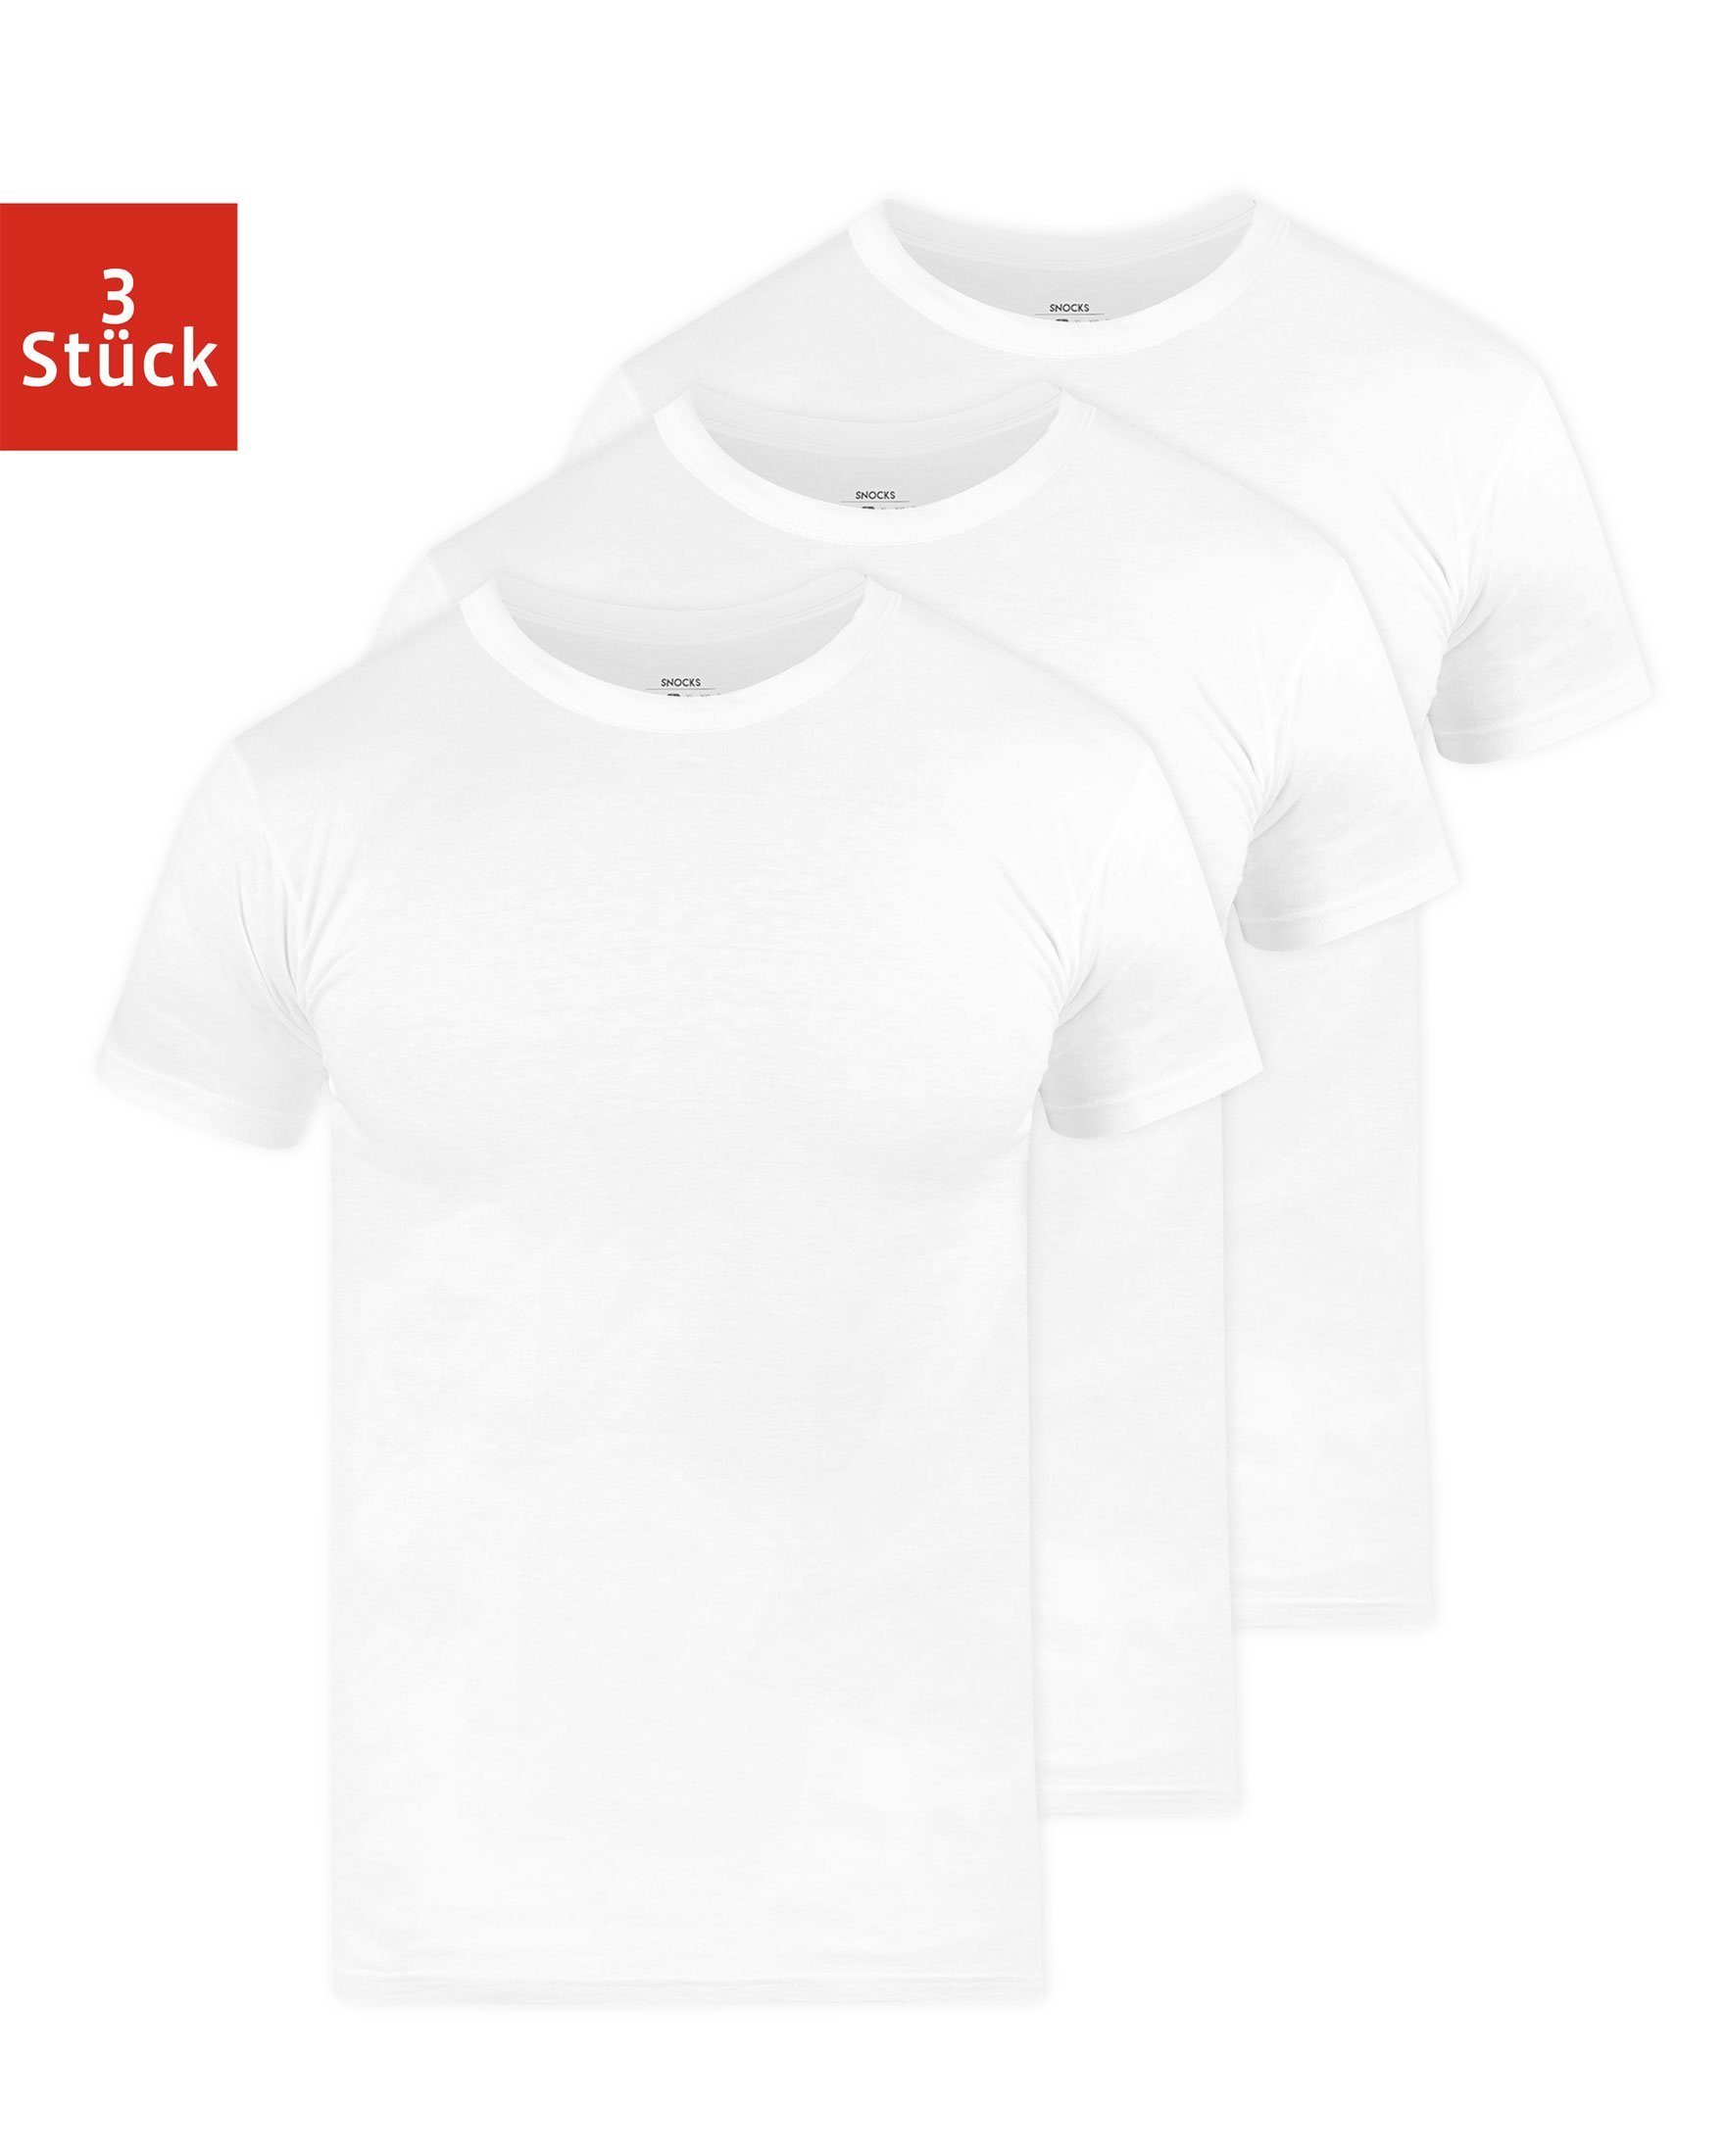 SNOCKS Unterziehshirt »Rundhals T-Shirt Unterhemden Herren« (3 Stück), aus  Bio-Baumwolle, extra lang geschnitten online kaufen | OTTO